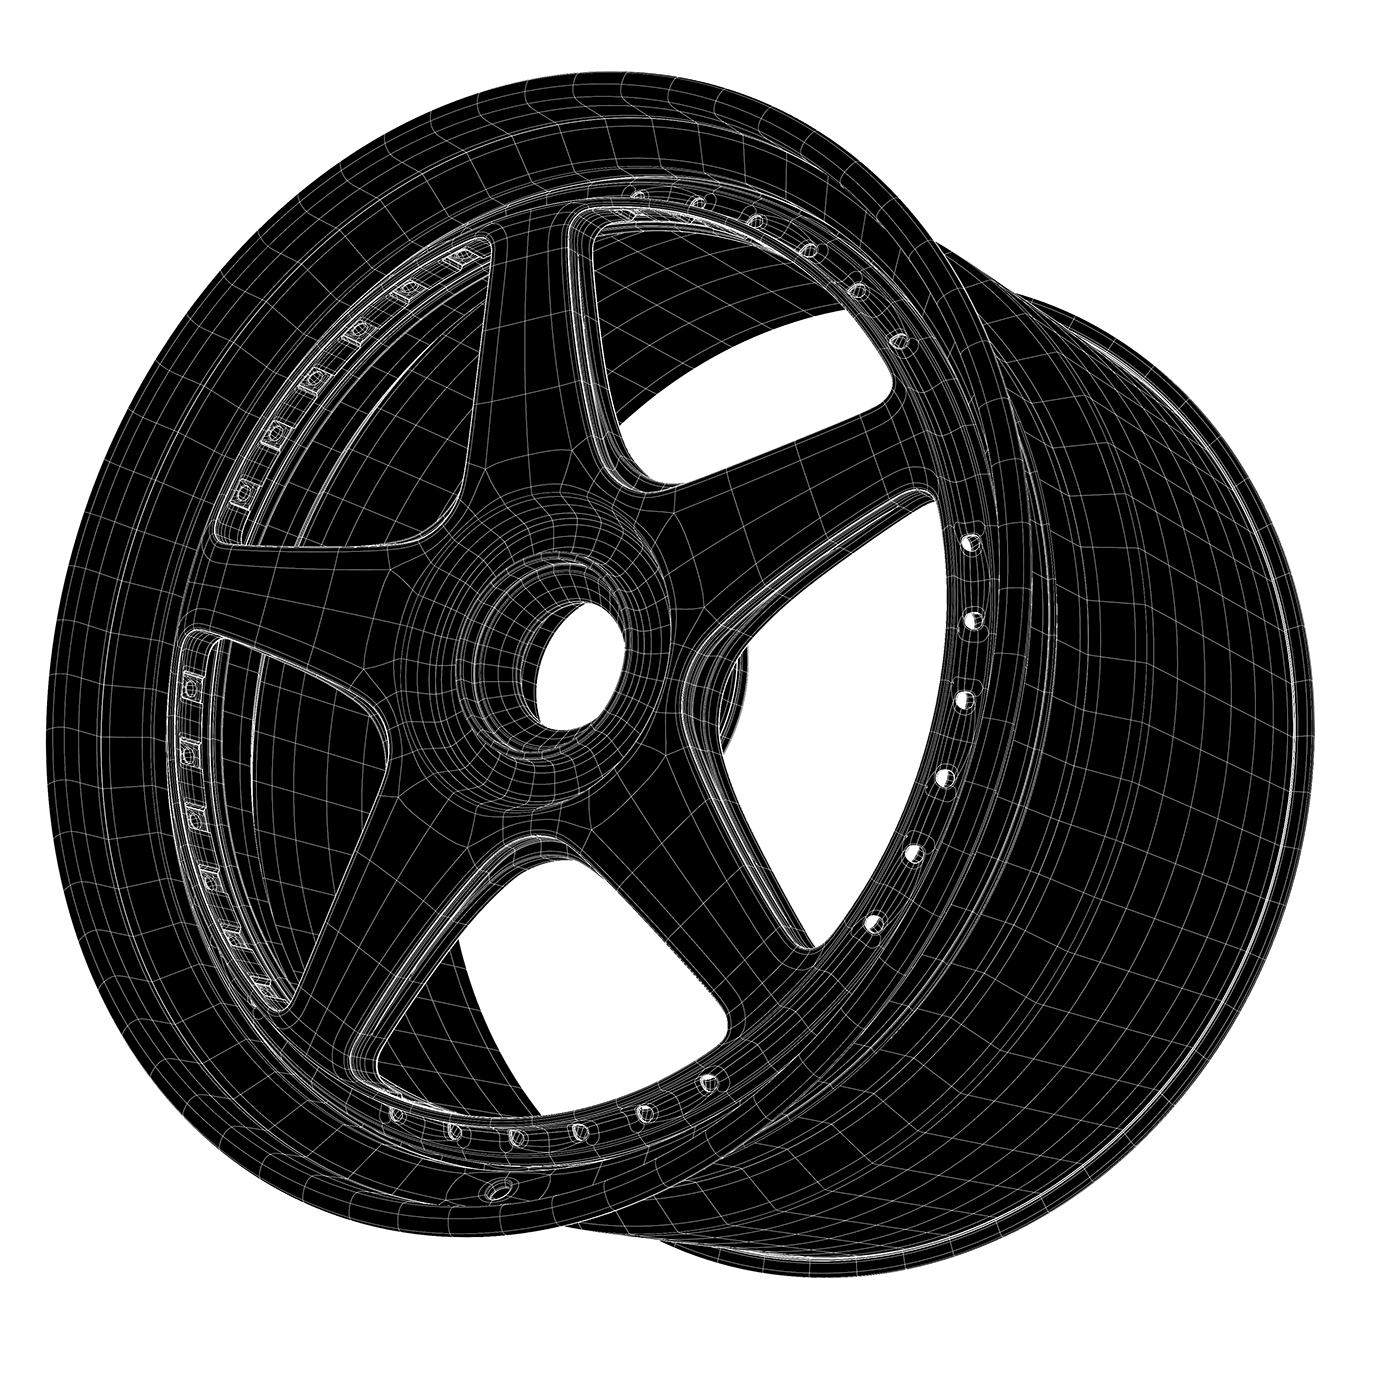 3D automotive   Automotive design design Render CGI wheels Rims 3d modeling visualization